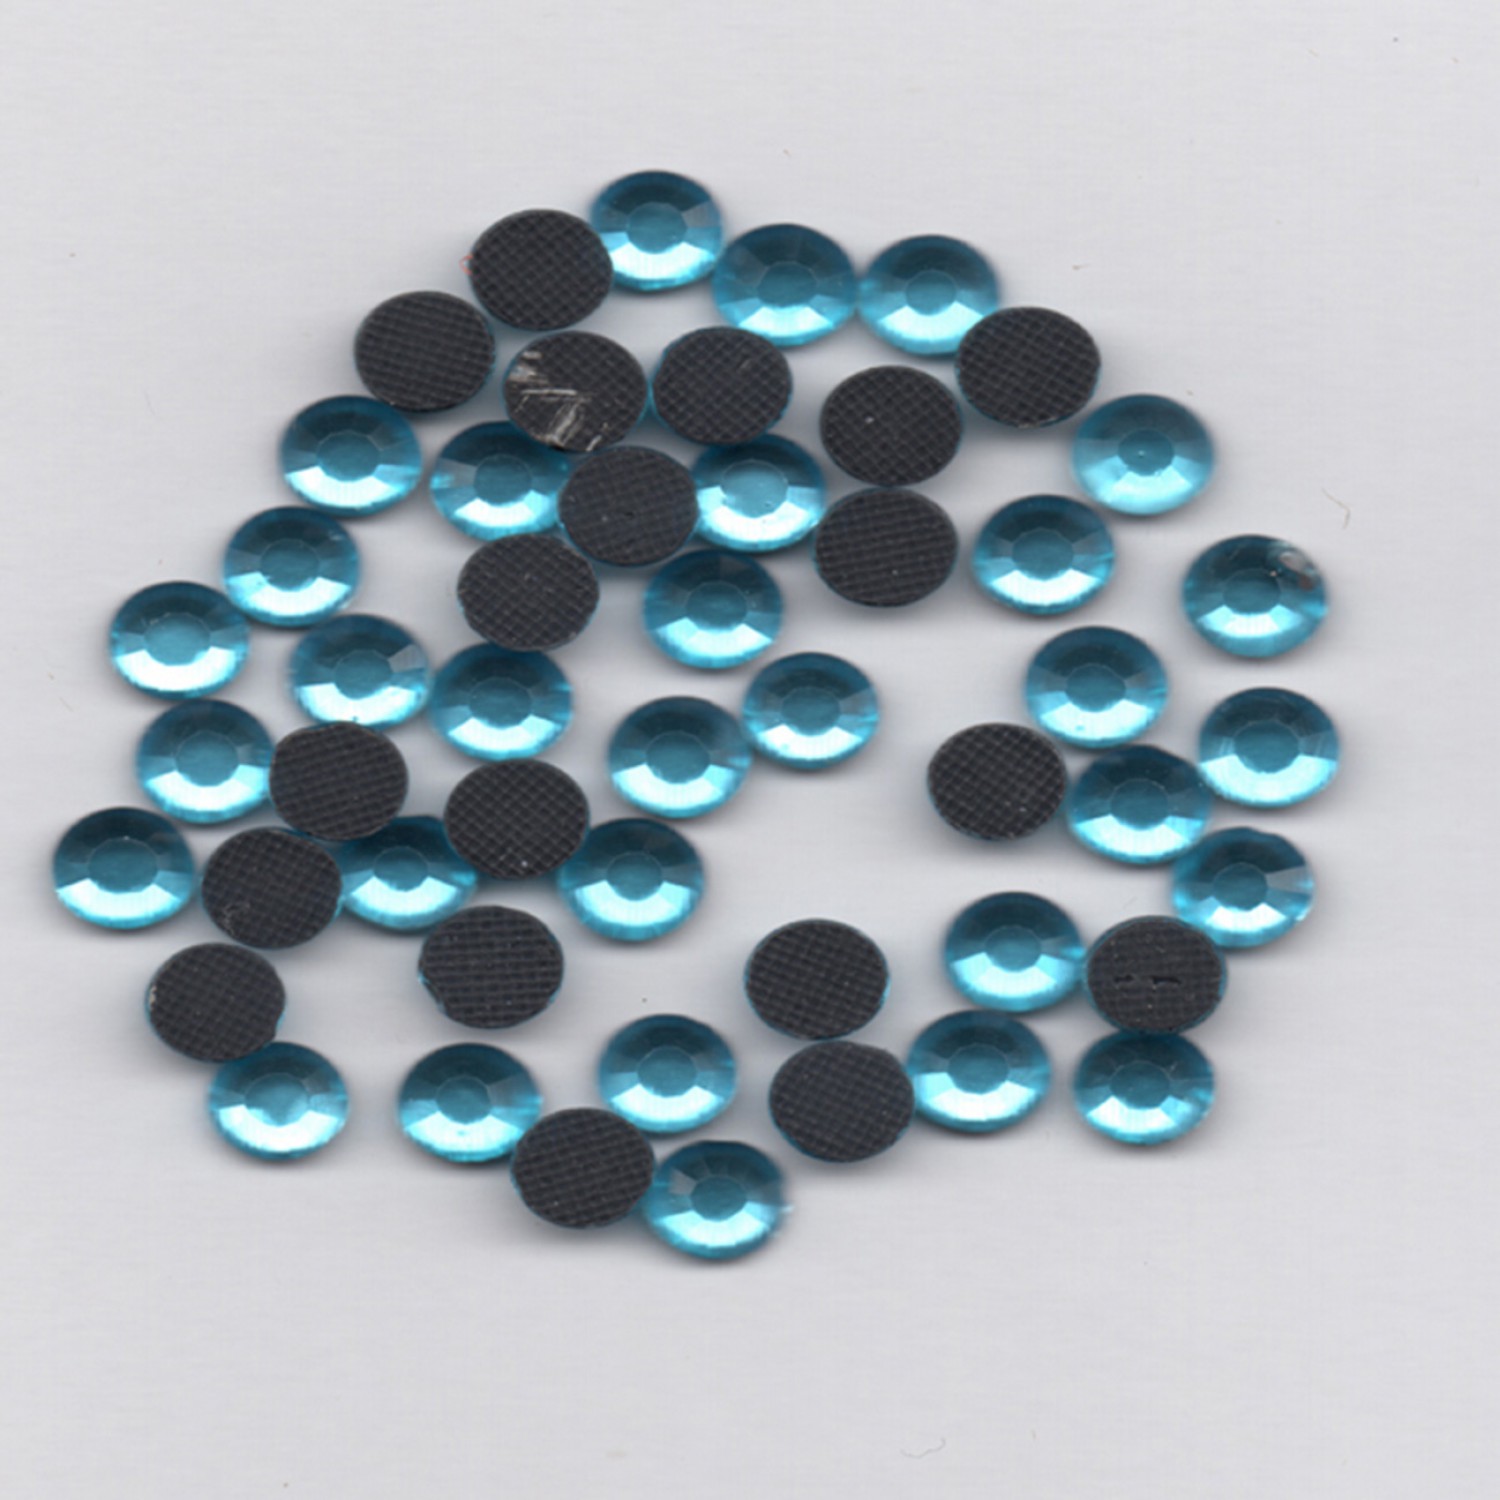 Hotfix Rhinestones 4mm - Aquamarine - 60 Pieces